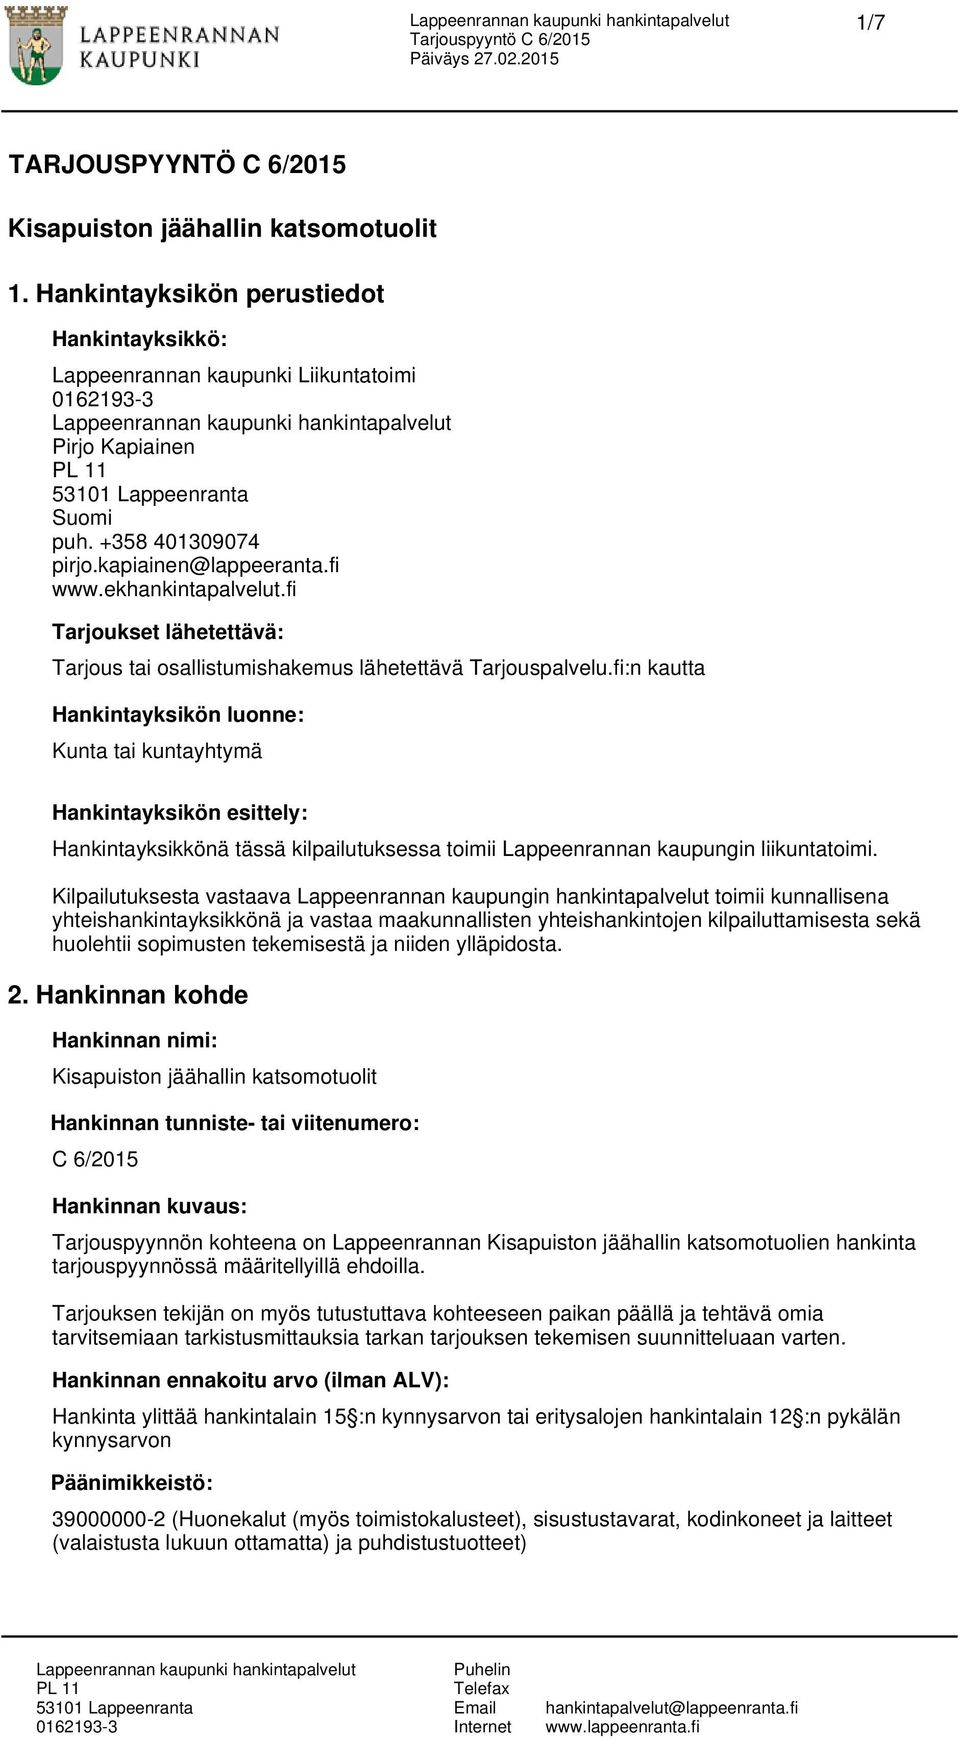 fi:n kautta Hankintayksikön luonne: Kunta tai kuntayhtymä Hankintayksikön esittely: Hankintayksikkönä tässä kilpailutuksessa toimii Lappeenrannan kaupungin liikuntatoimi.